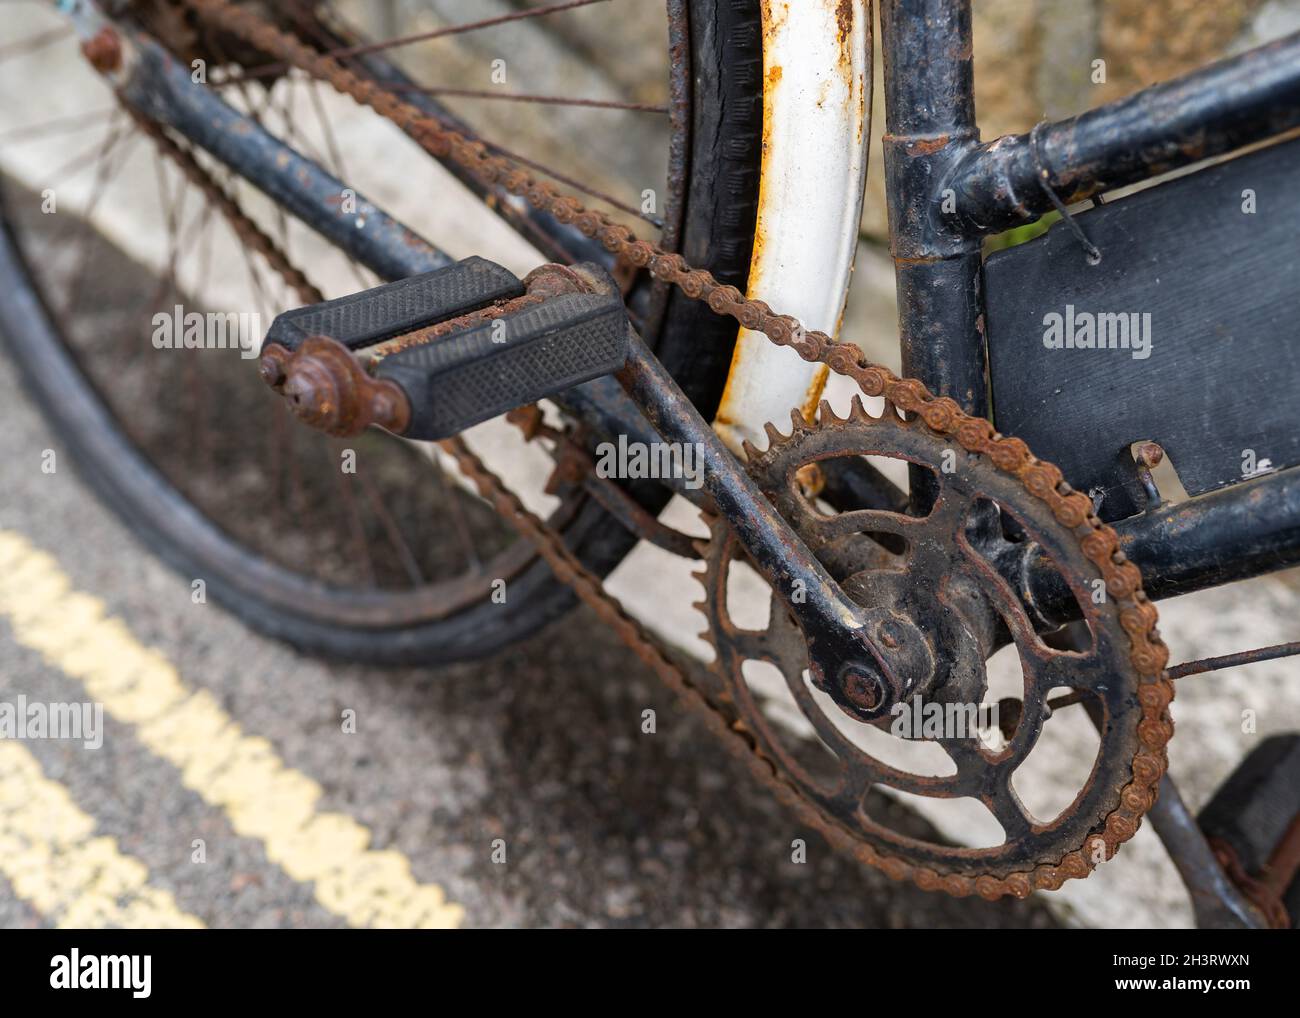 Rostige alte Fahrradkette, die Öl und Wartung benötigt. Das Wetter war  verrostet und funktionierte nicht mehr Stockfotografie - Alamy